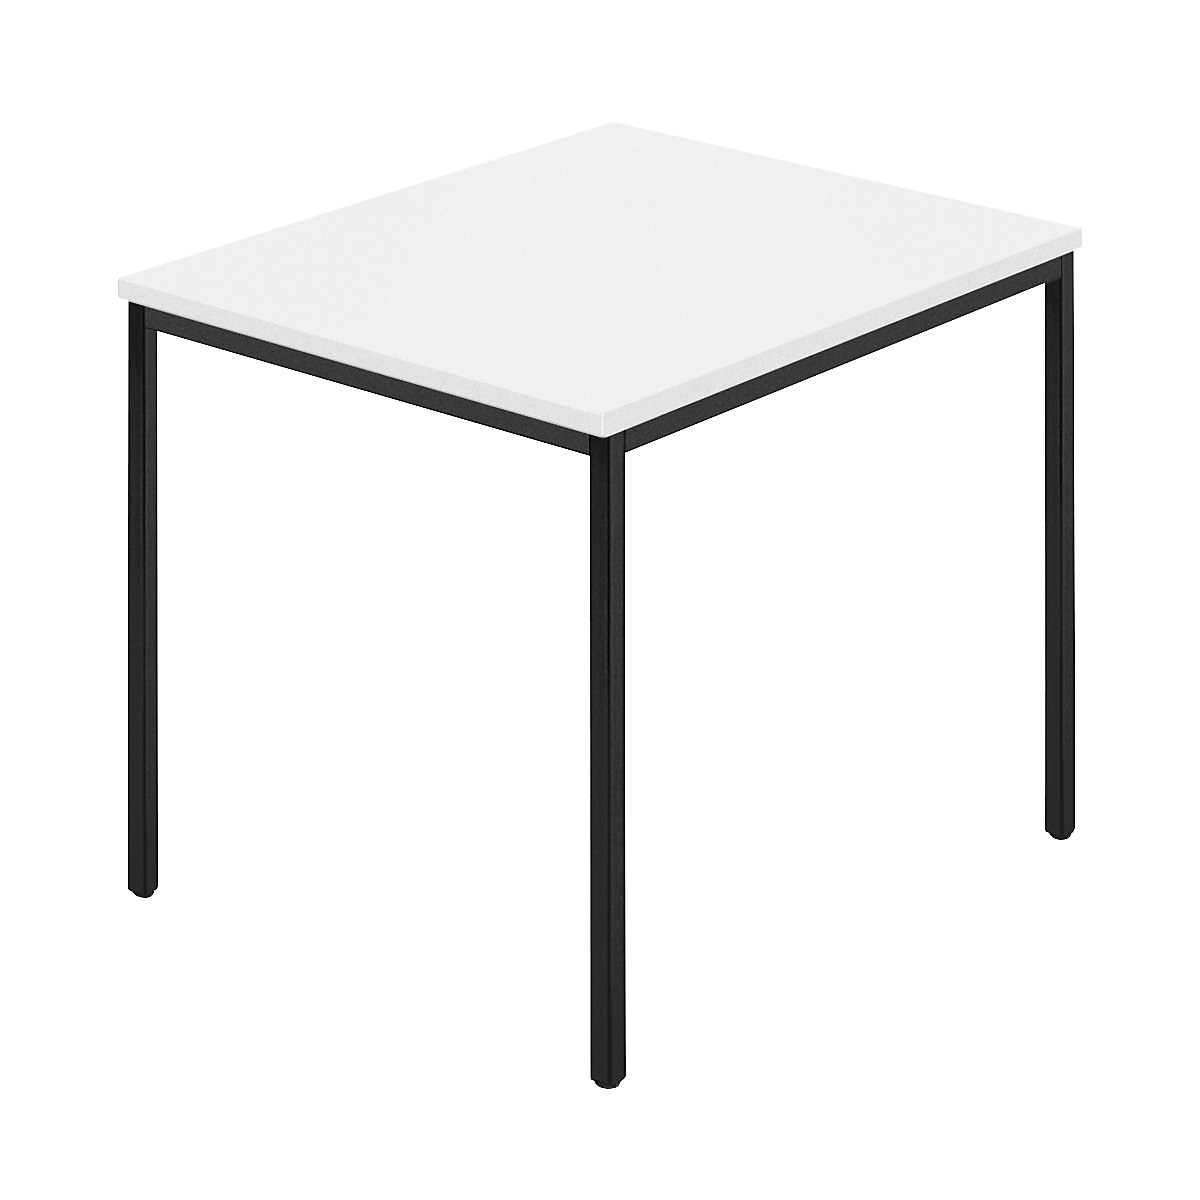 Stół prostokątny, czworokątna rurka lakierowana, szer. x głęb. 800 x 800 mm, biały / antracyt-8